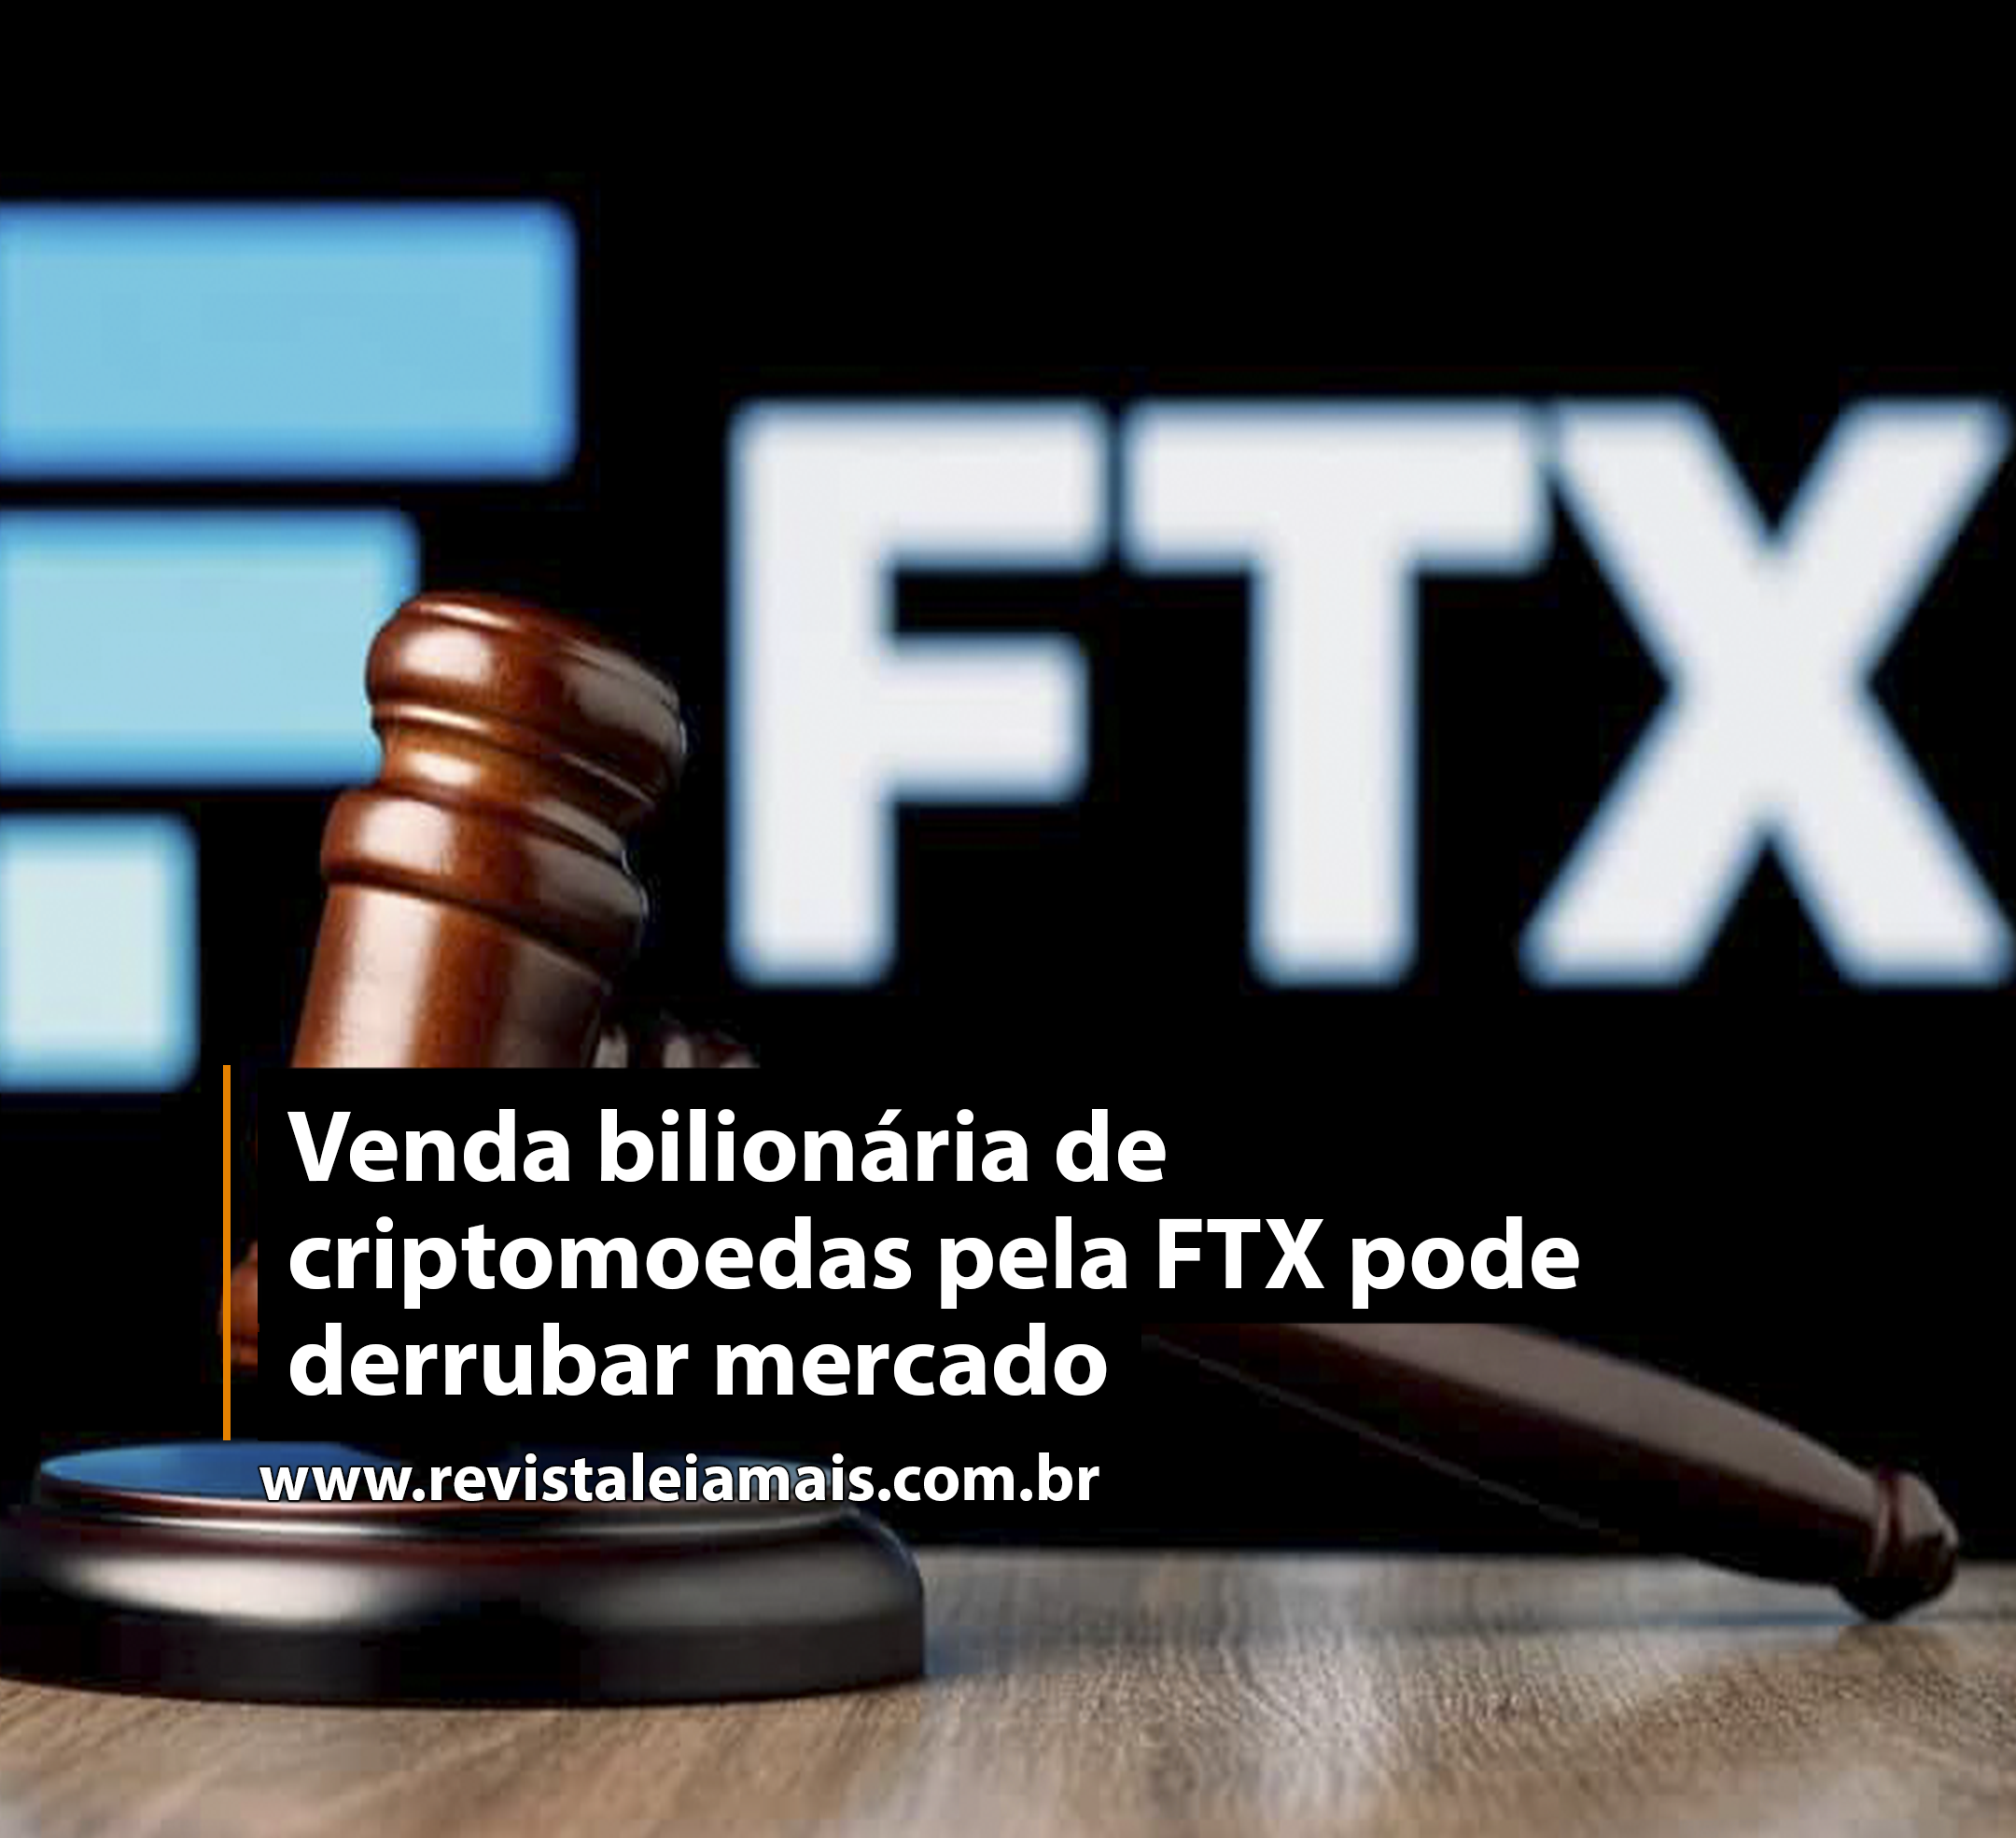 Venda bilionária de criptomoedas pela FTX pode derrubar mercado